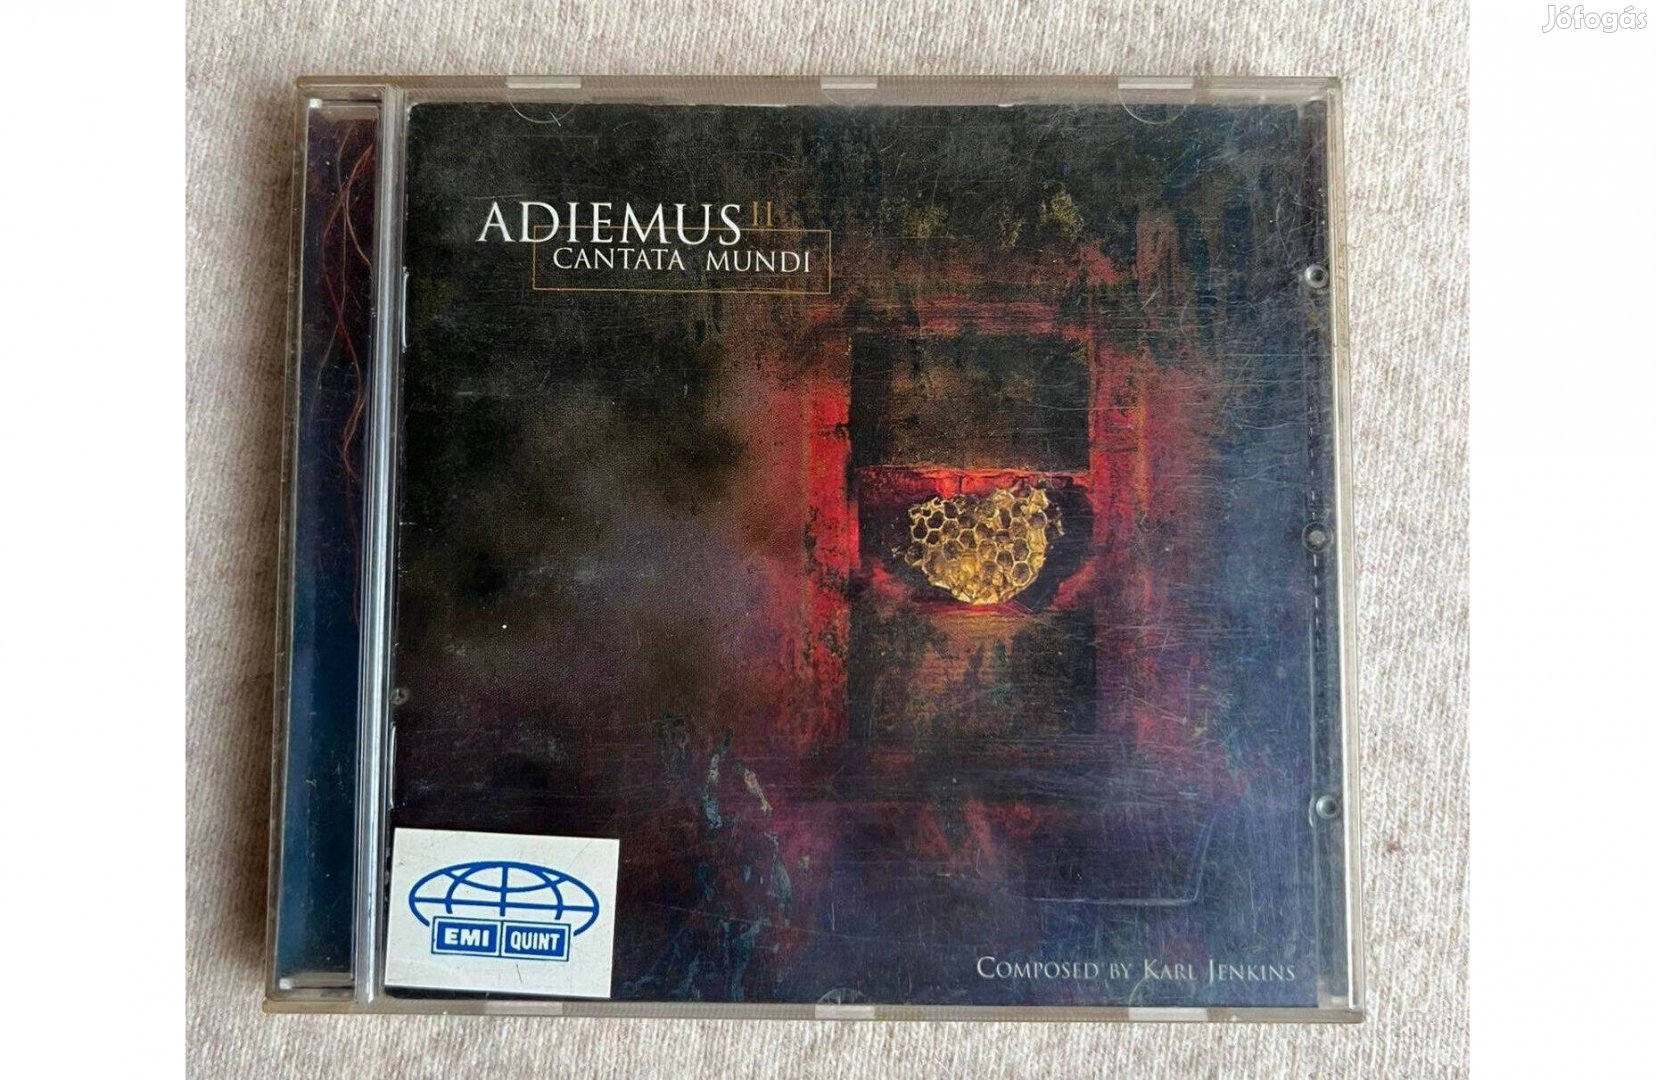 Karl Jenkins - Adiemus - Adiemus II: Cantata Mundi